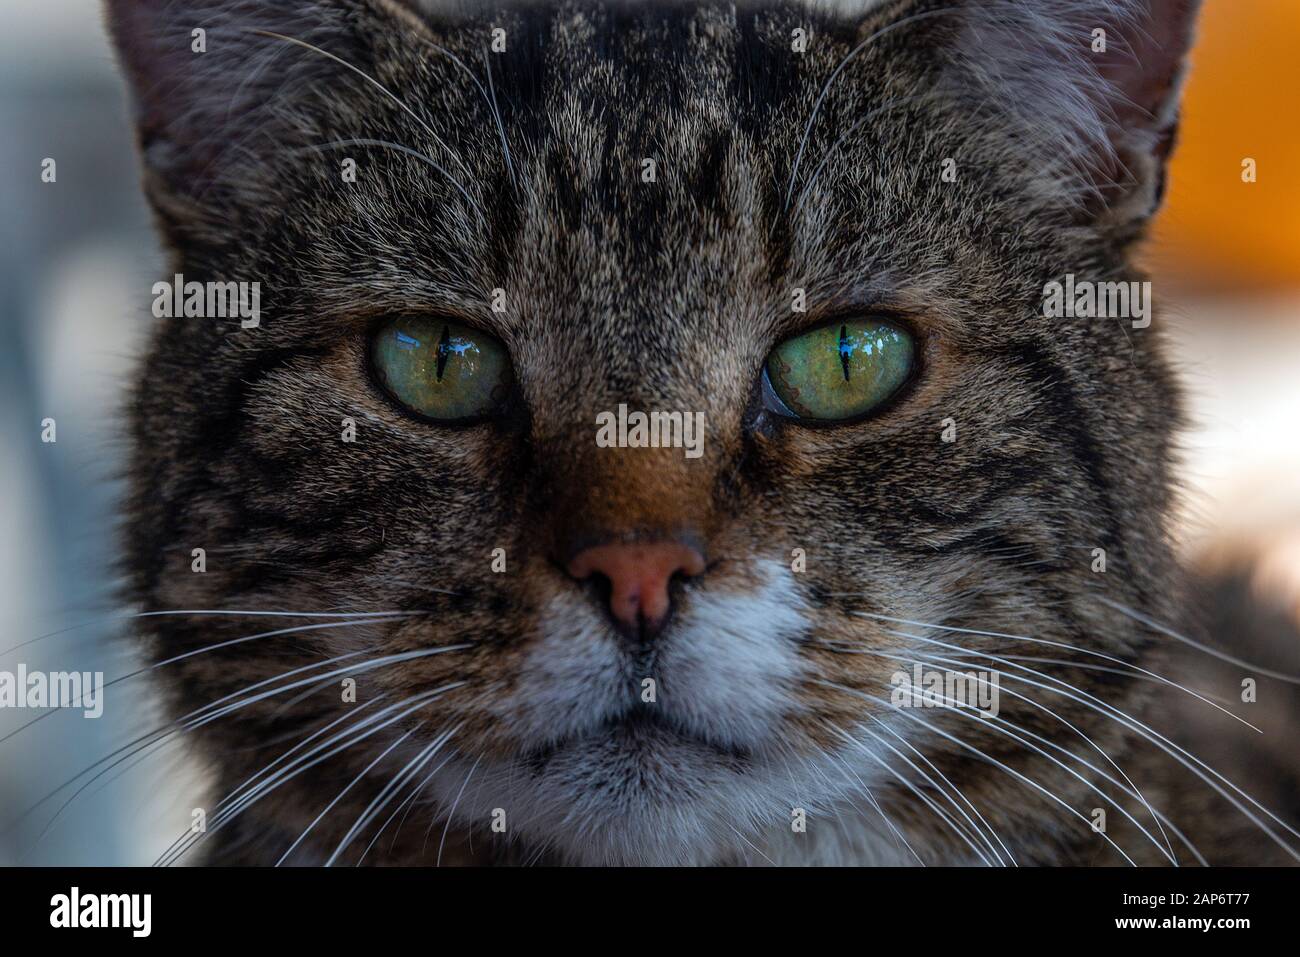 Primer plano de una cara de gatos mientras mira en la lente de la cámara. Foto de stock